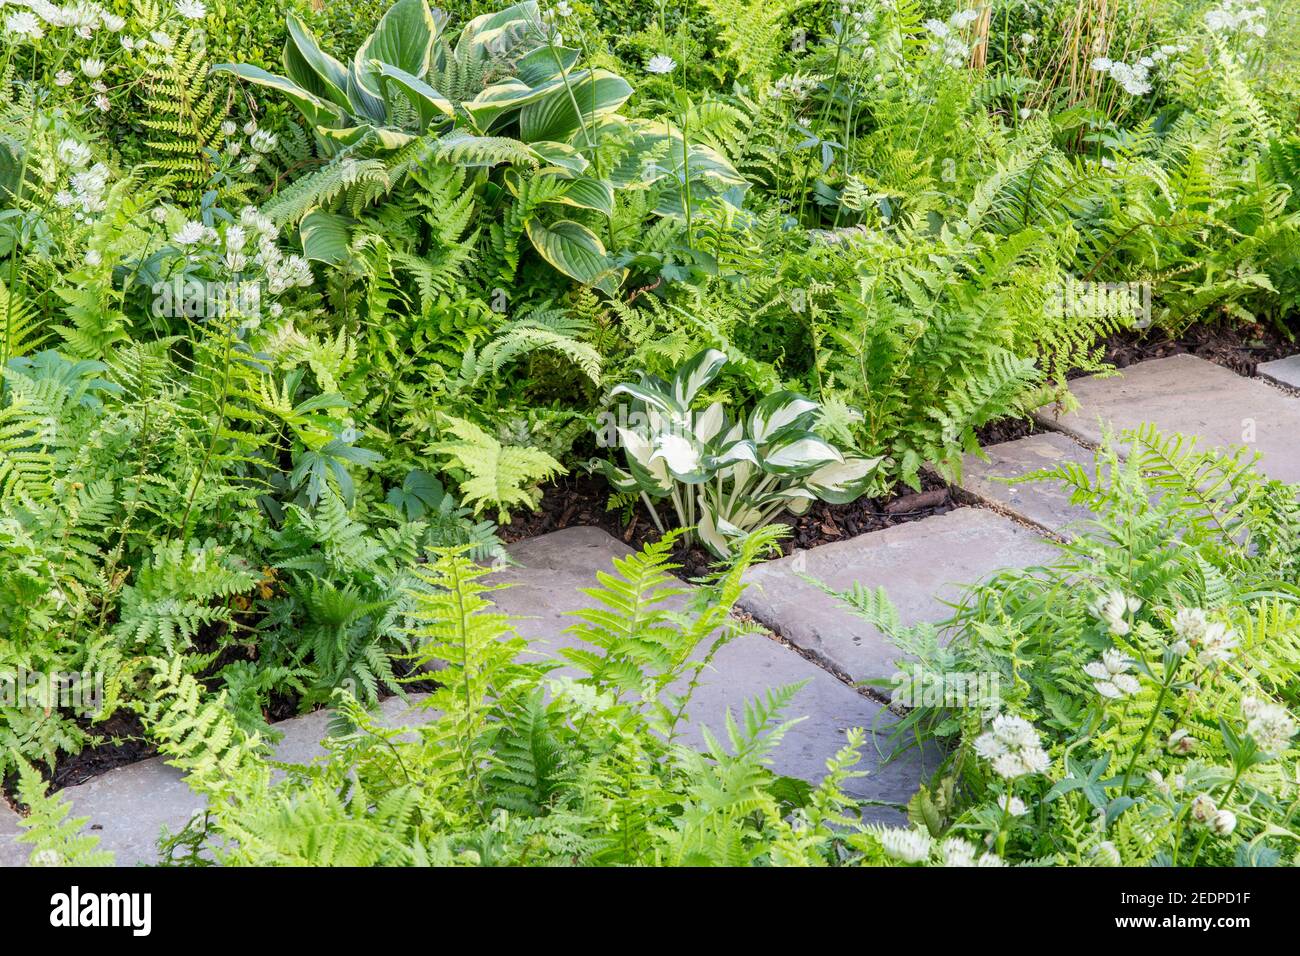 Ein englischer schattiger Vorgarten Steinplatten Pfad mit Pflanzen von Hosta und Farnen in einem grünen Pflanzschema Farben England GB UK Stockfoto